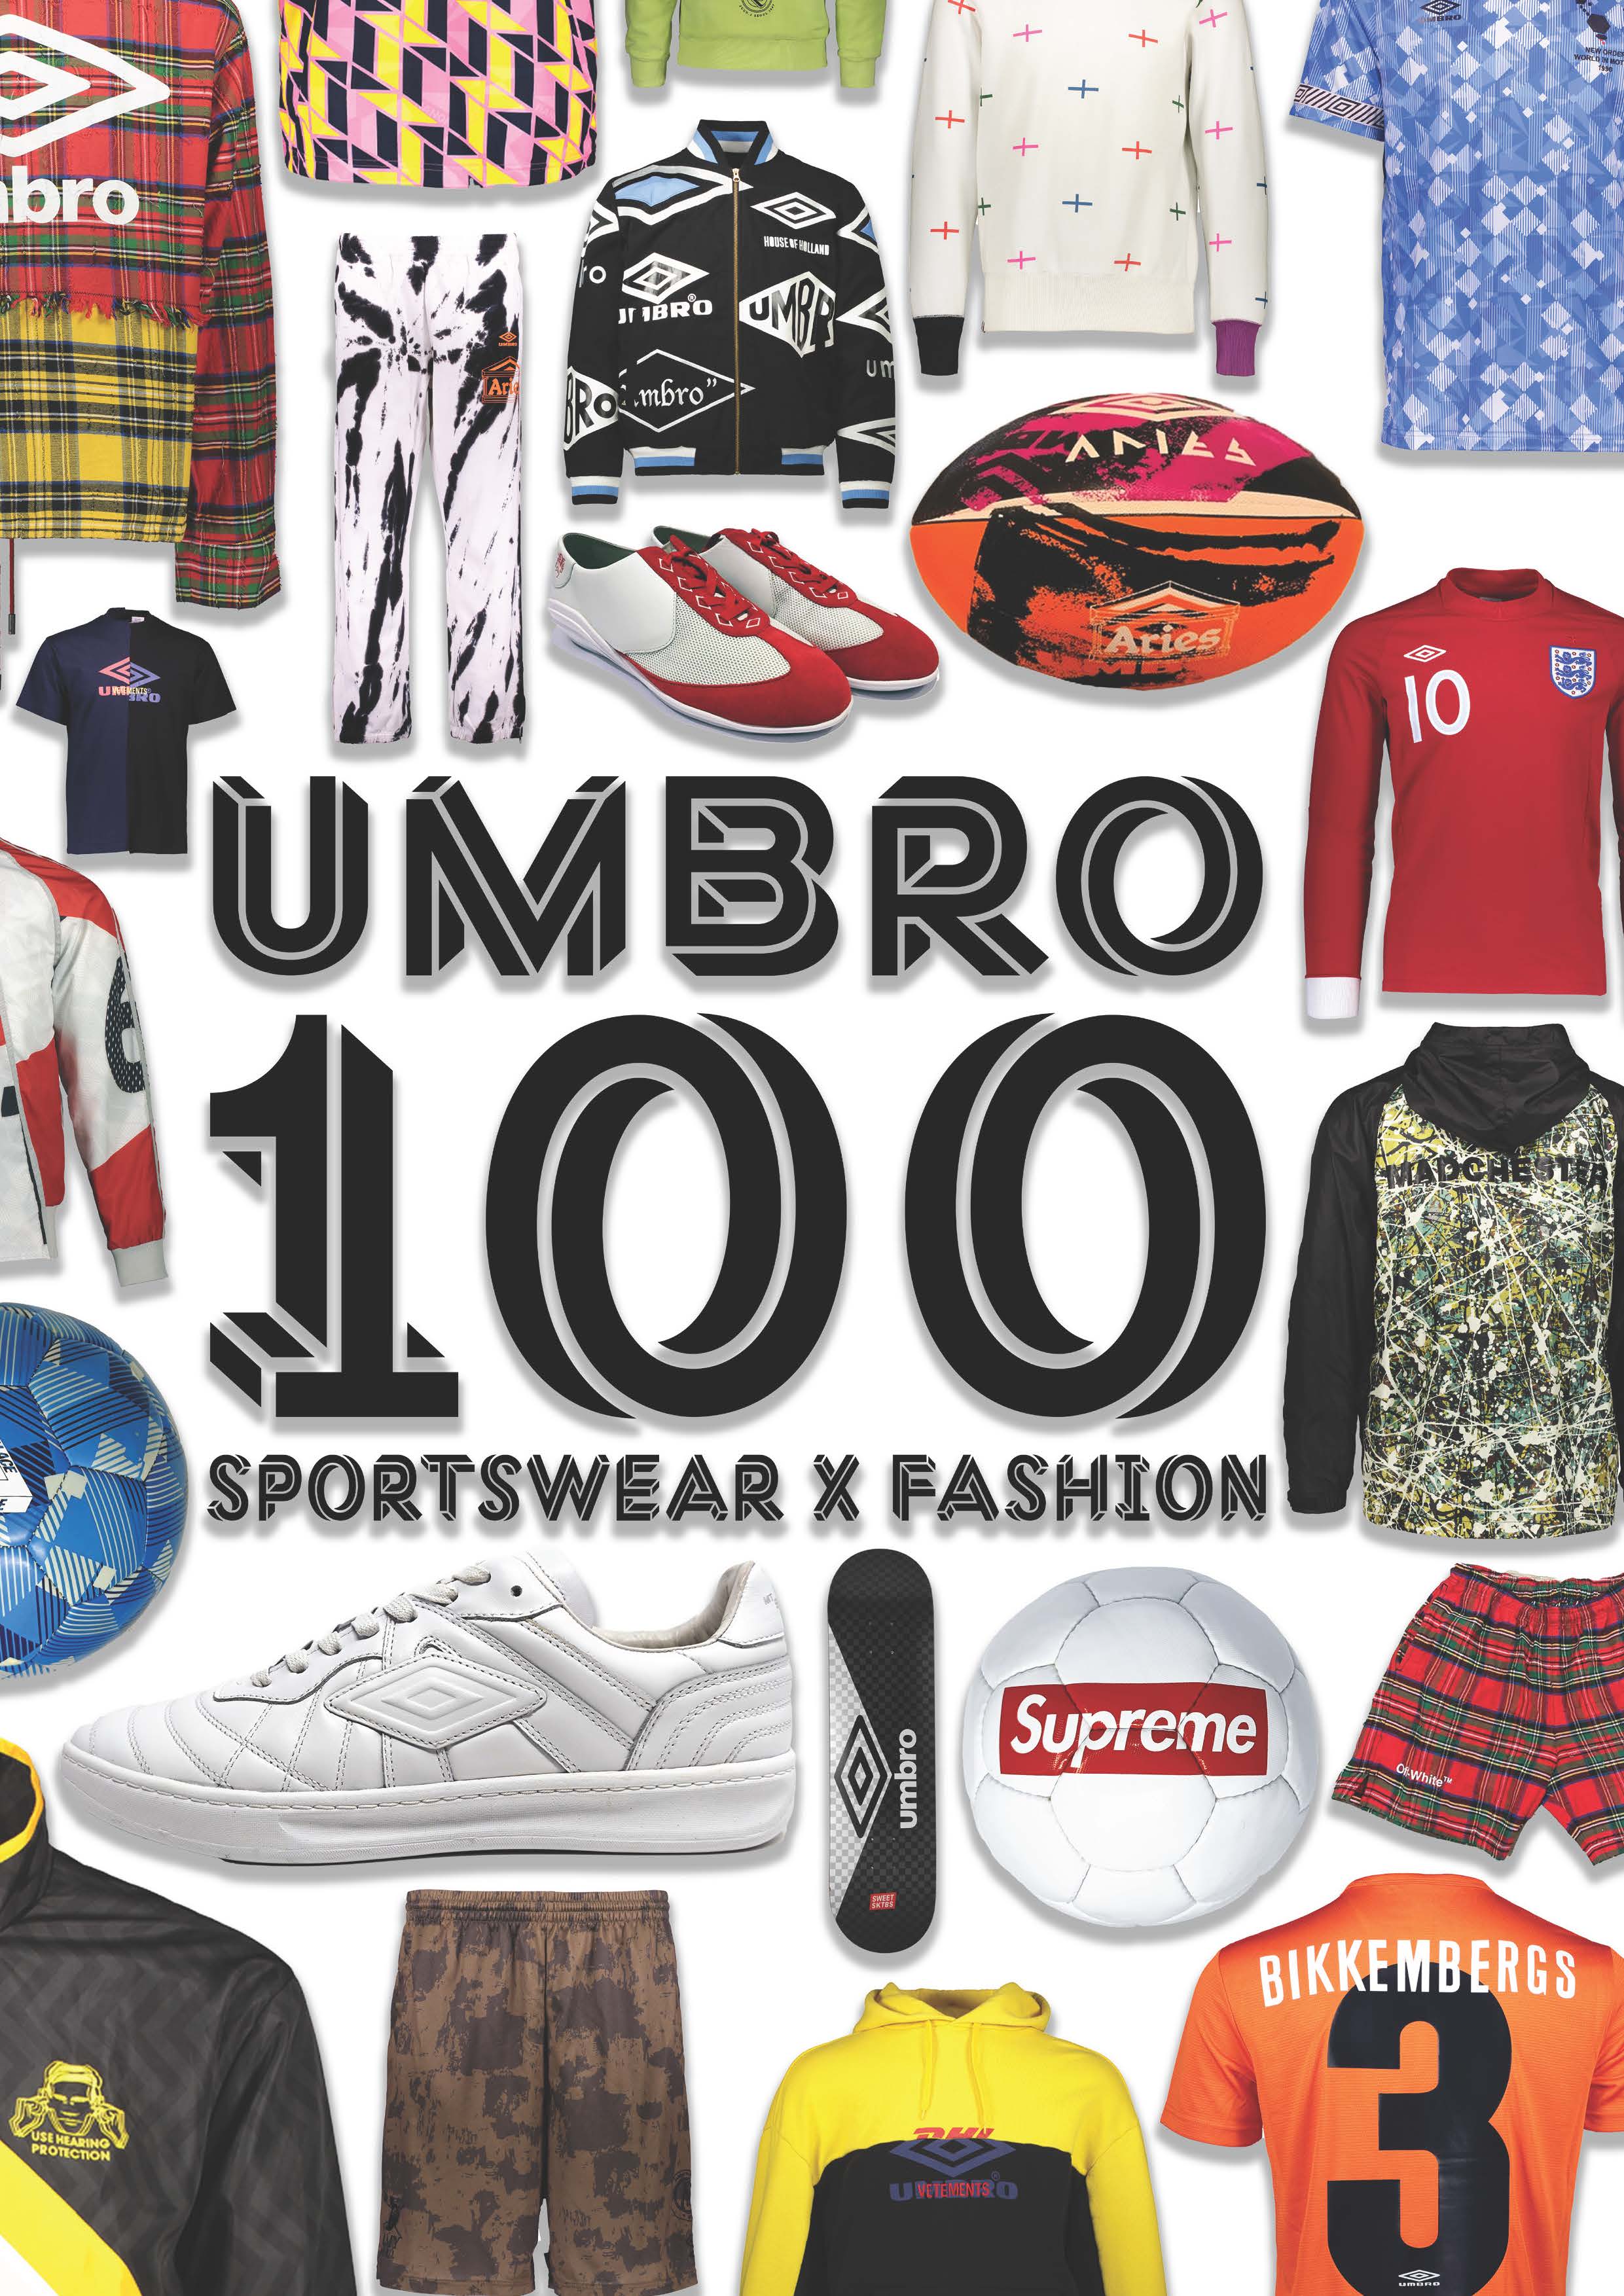 Umbro 100 Catalogue cover